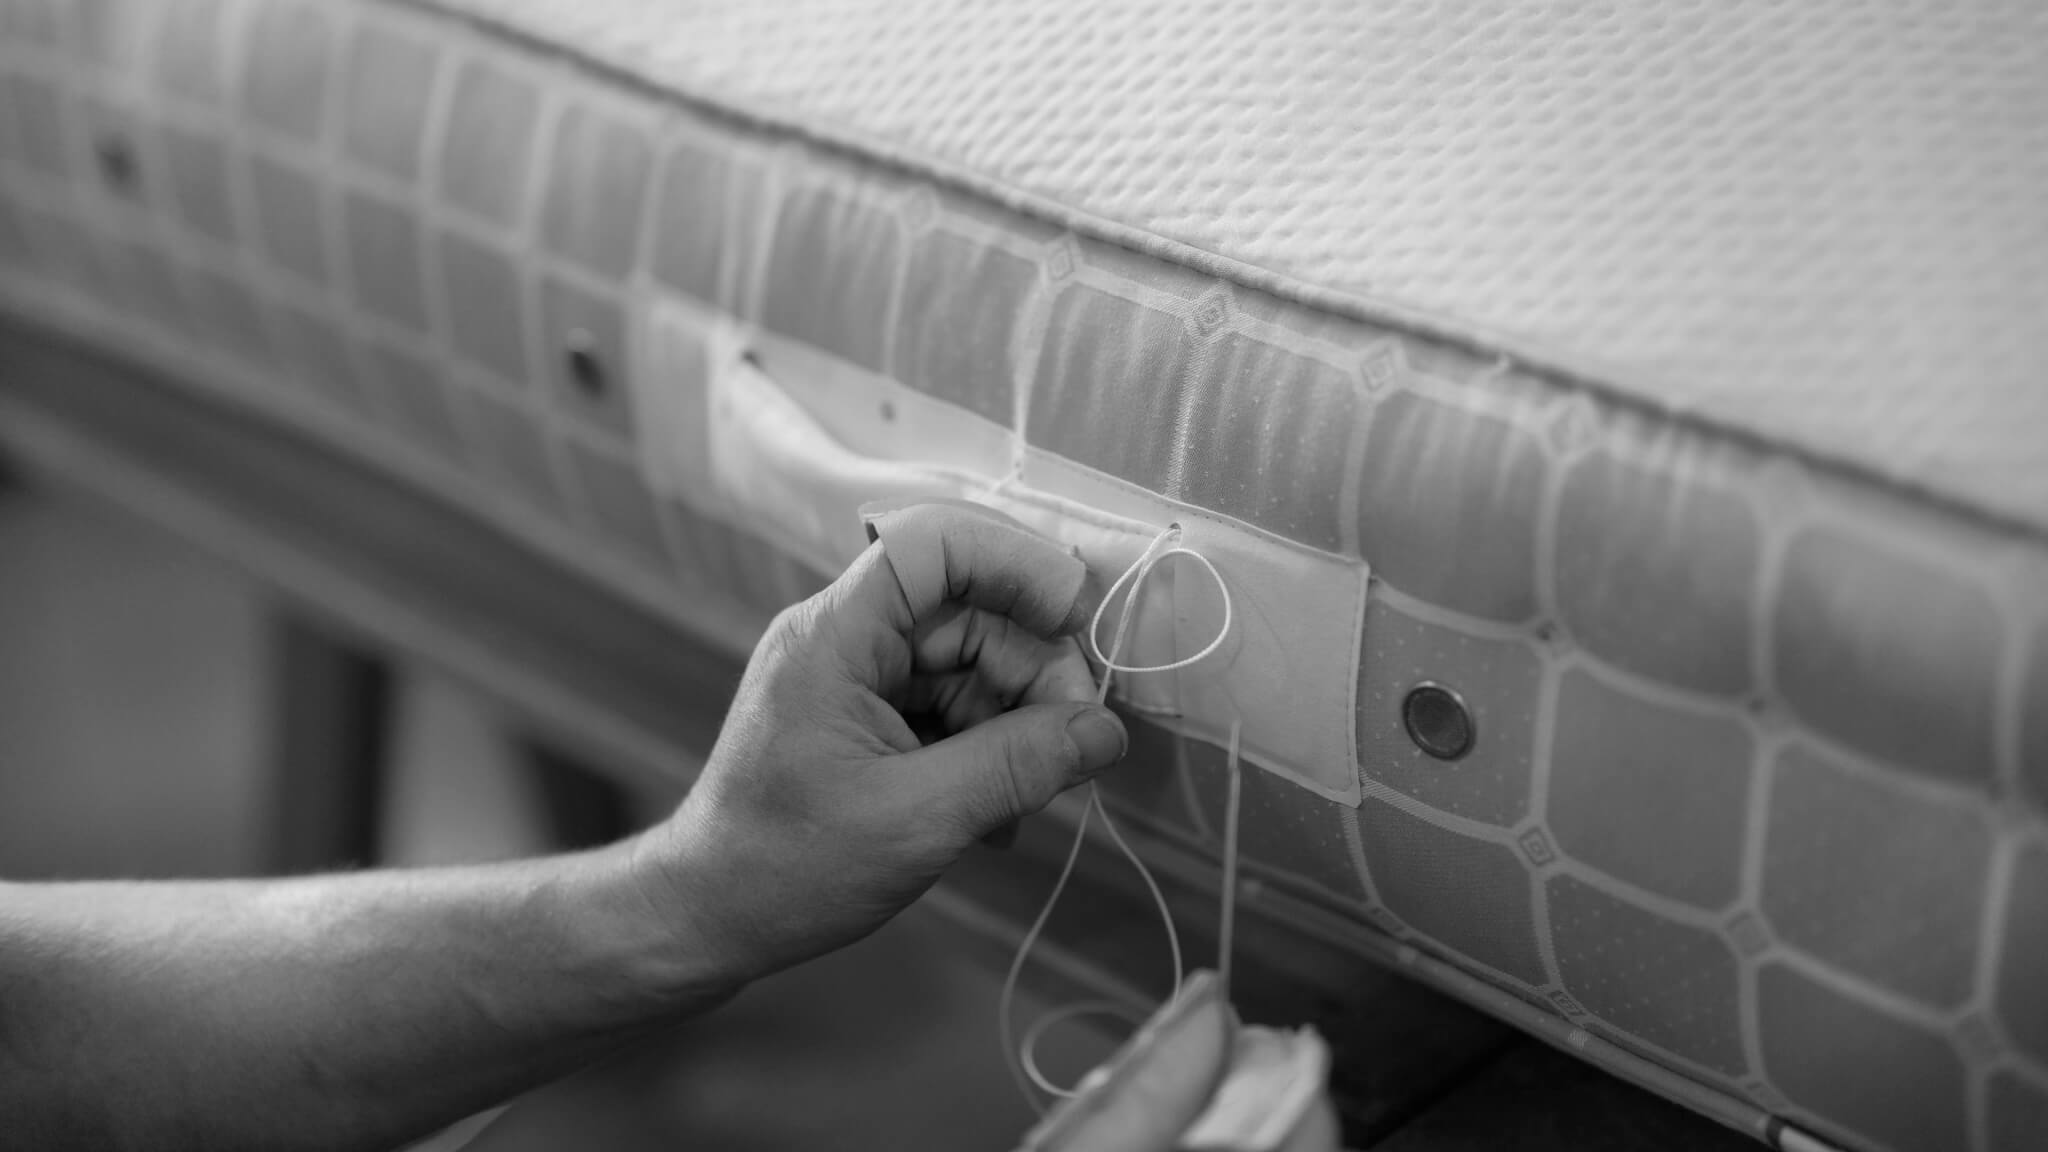 Hand stitching a Savoir mattress